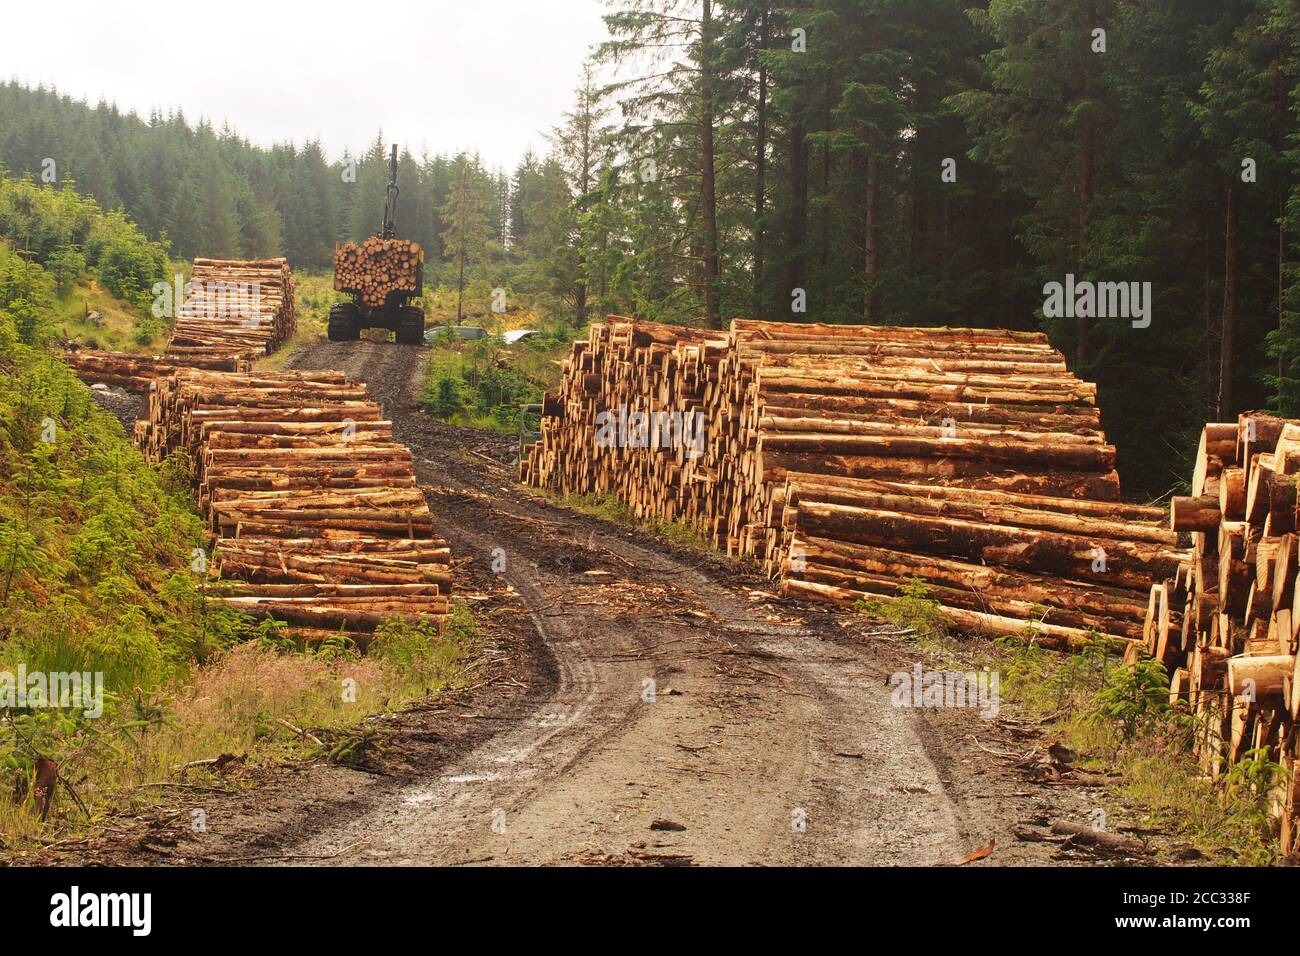 En regardant le long des extrémités de deux tas de rondins coupés d'arbres à feuilles persistantes, coupés et chargés par la commission forestière avec un transitaire Ponsse à Argyll, en Écosse Banque D'Images